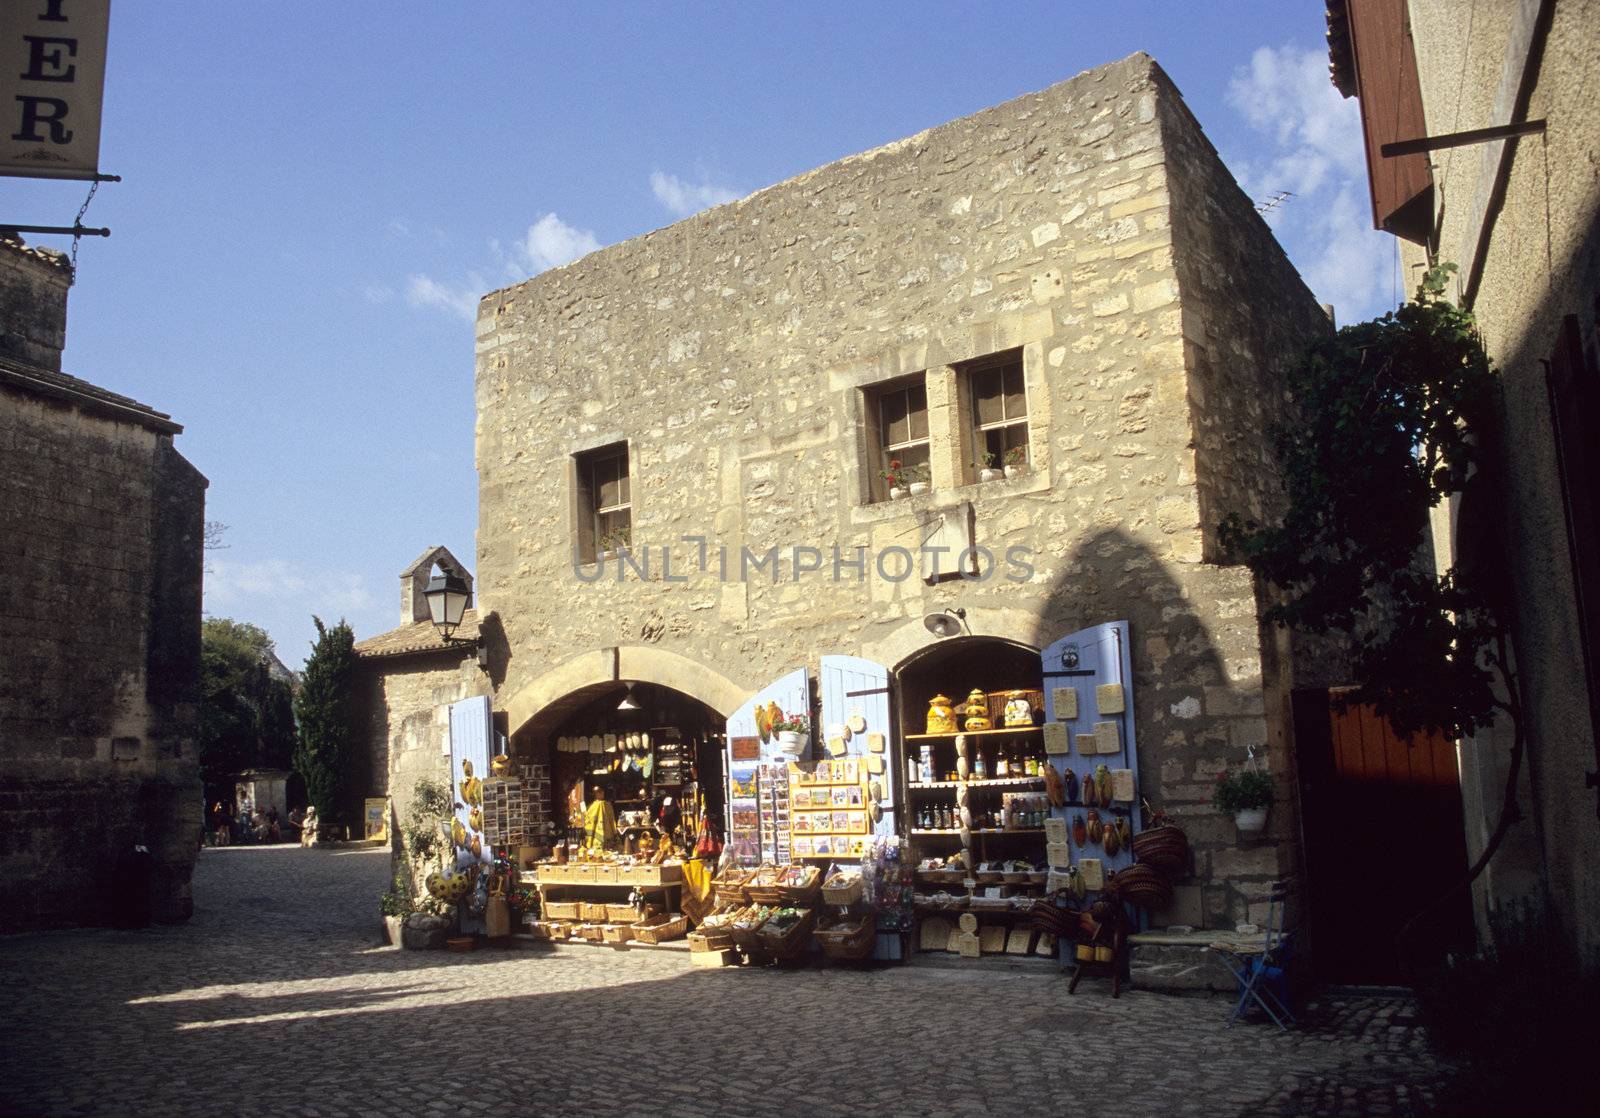 A quaint souvenier shop selling goods from Provence, Les Baux de Provence, France. 